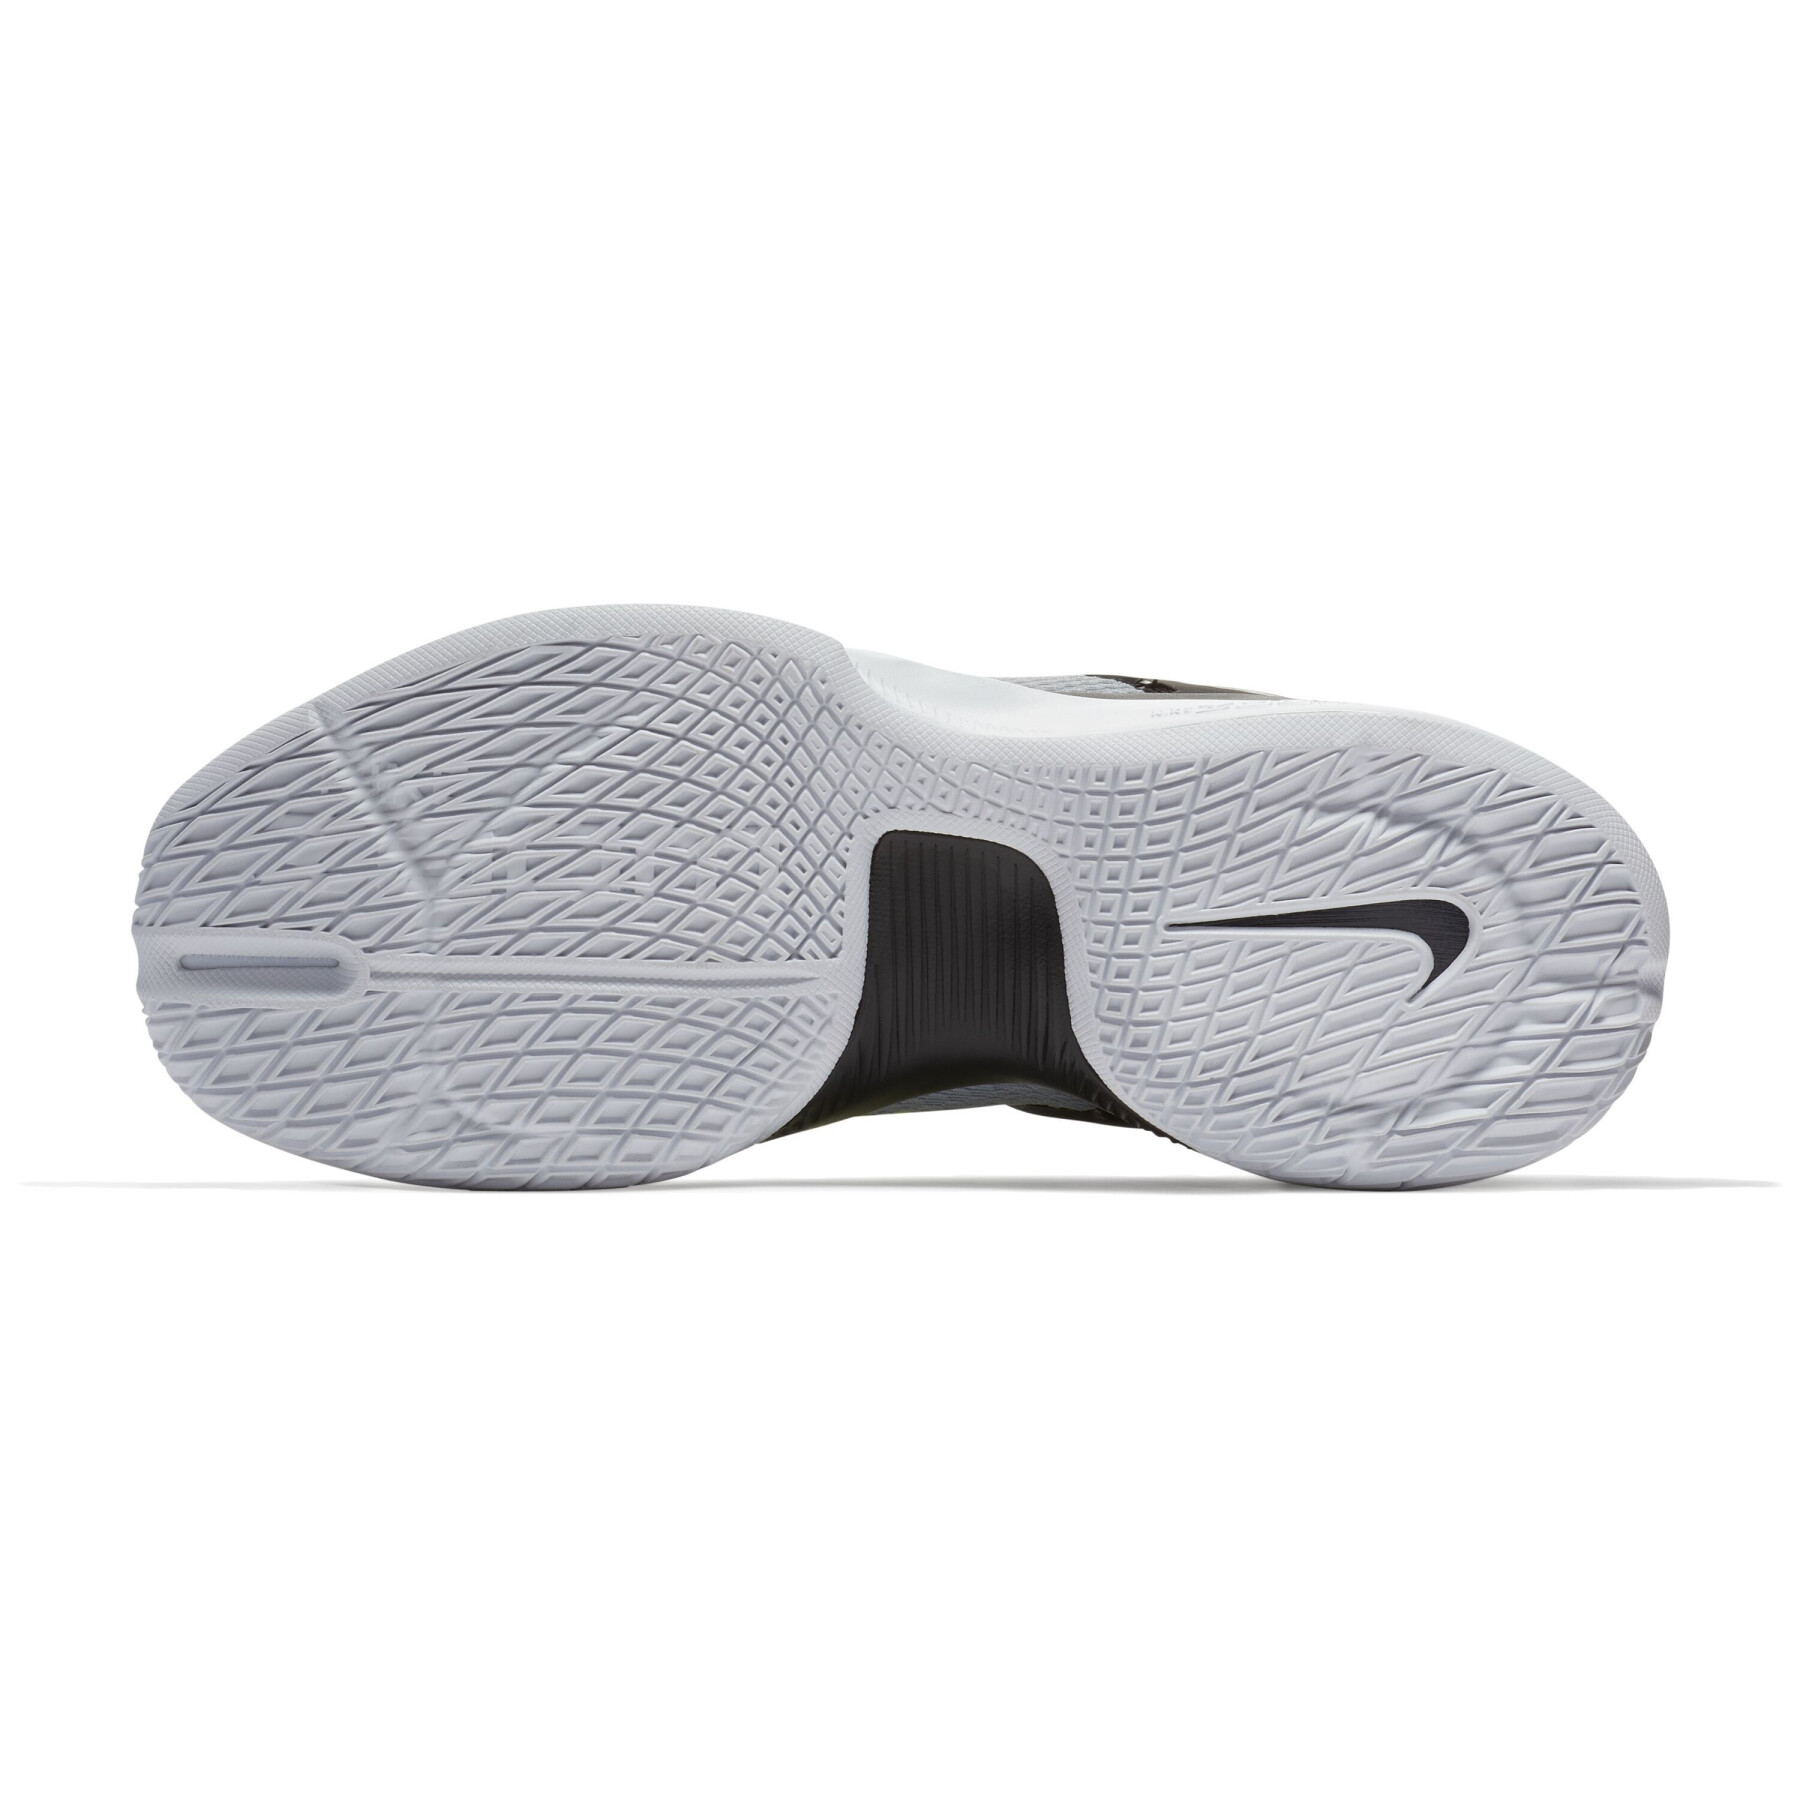 Indoor-Schuhe Frau Nike Air Zoom Hyperace